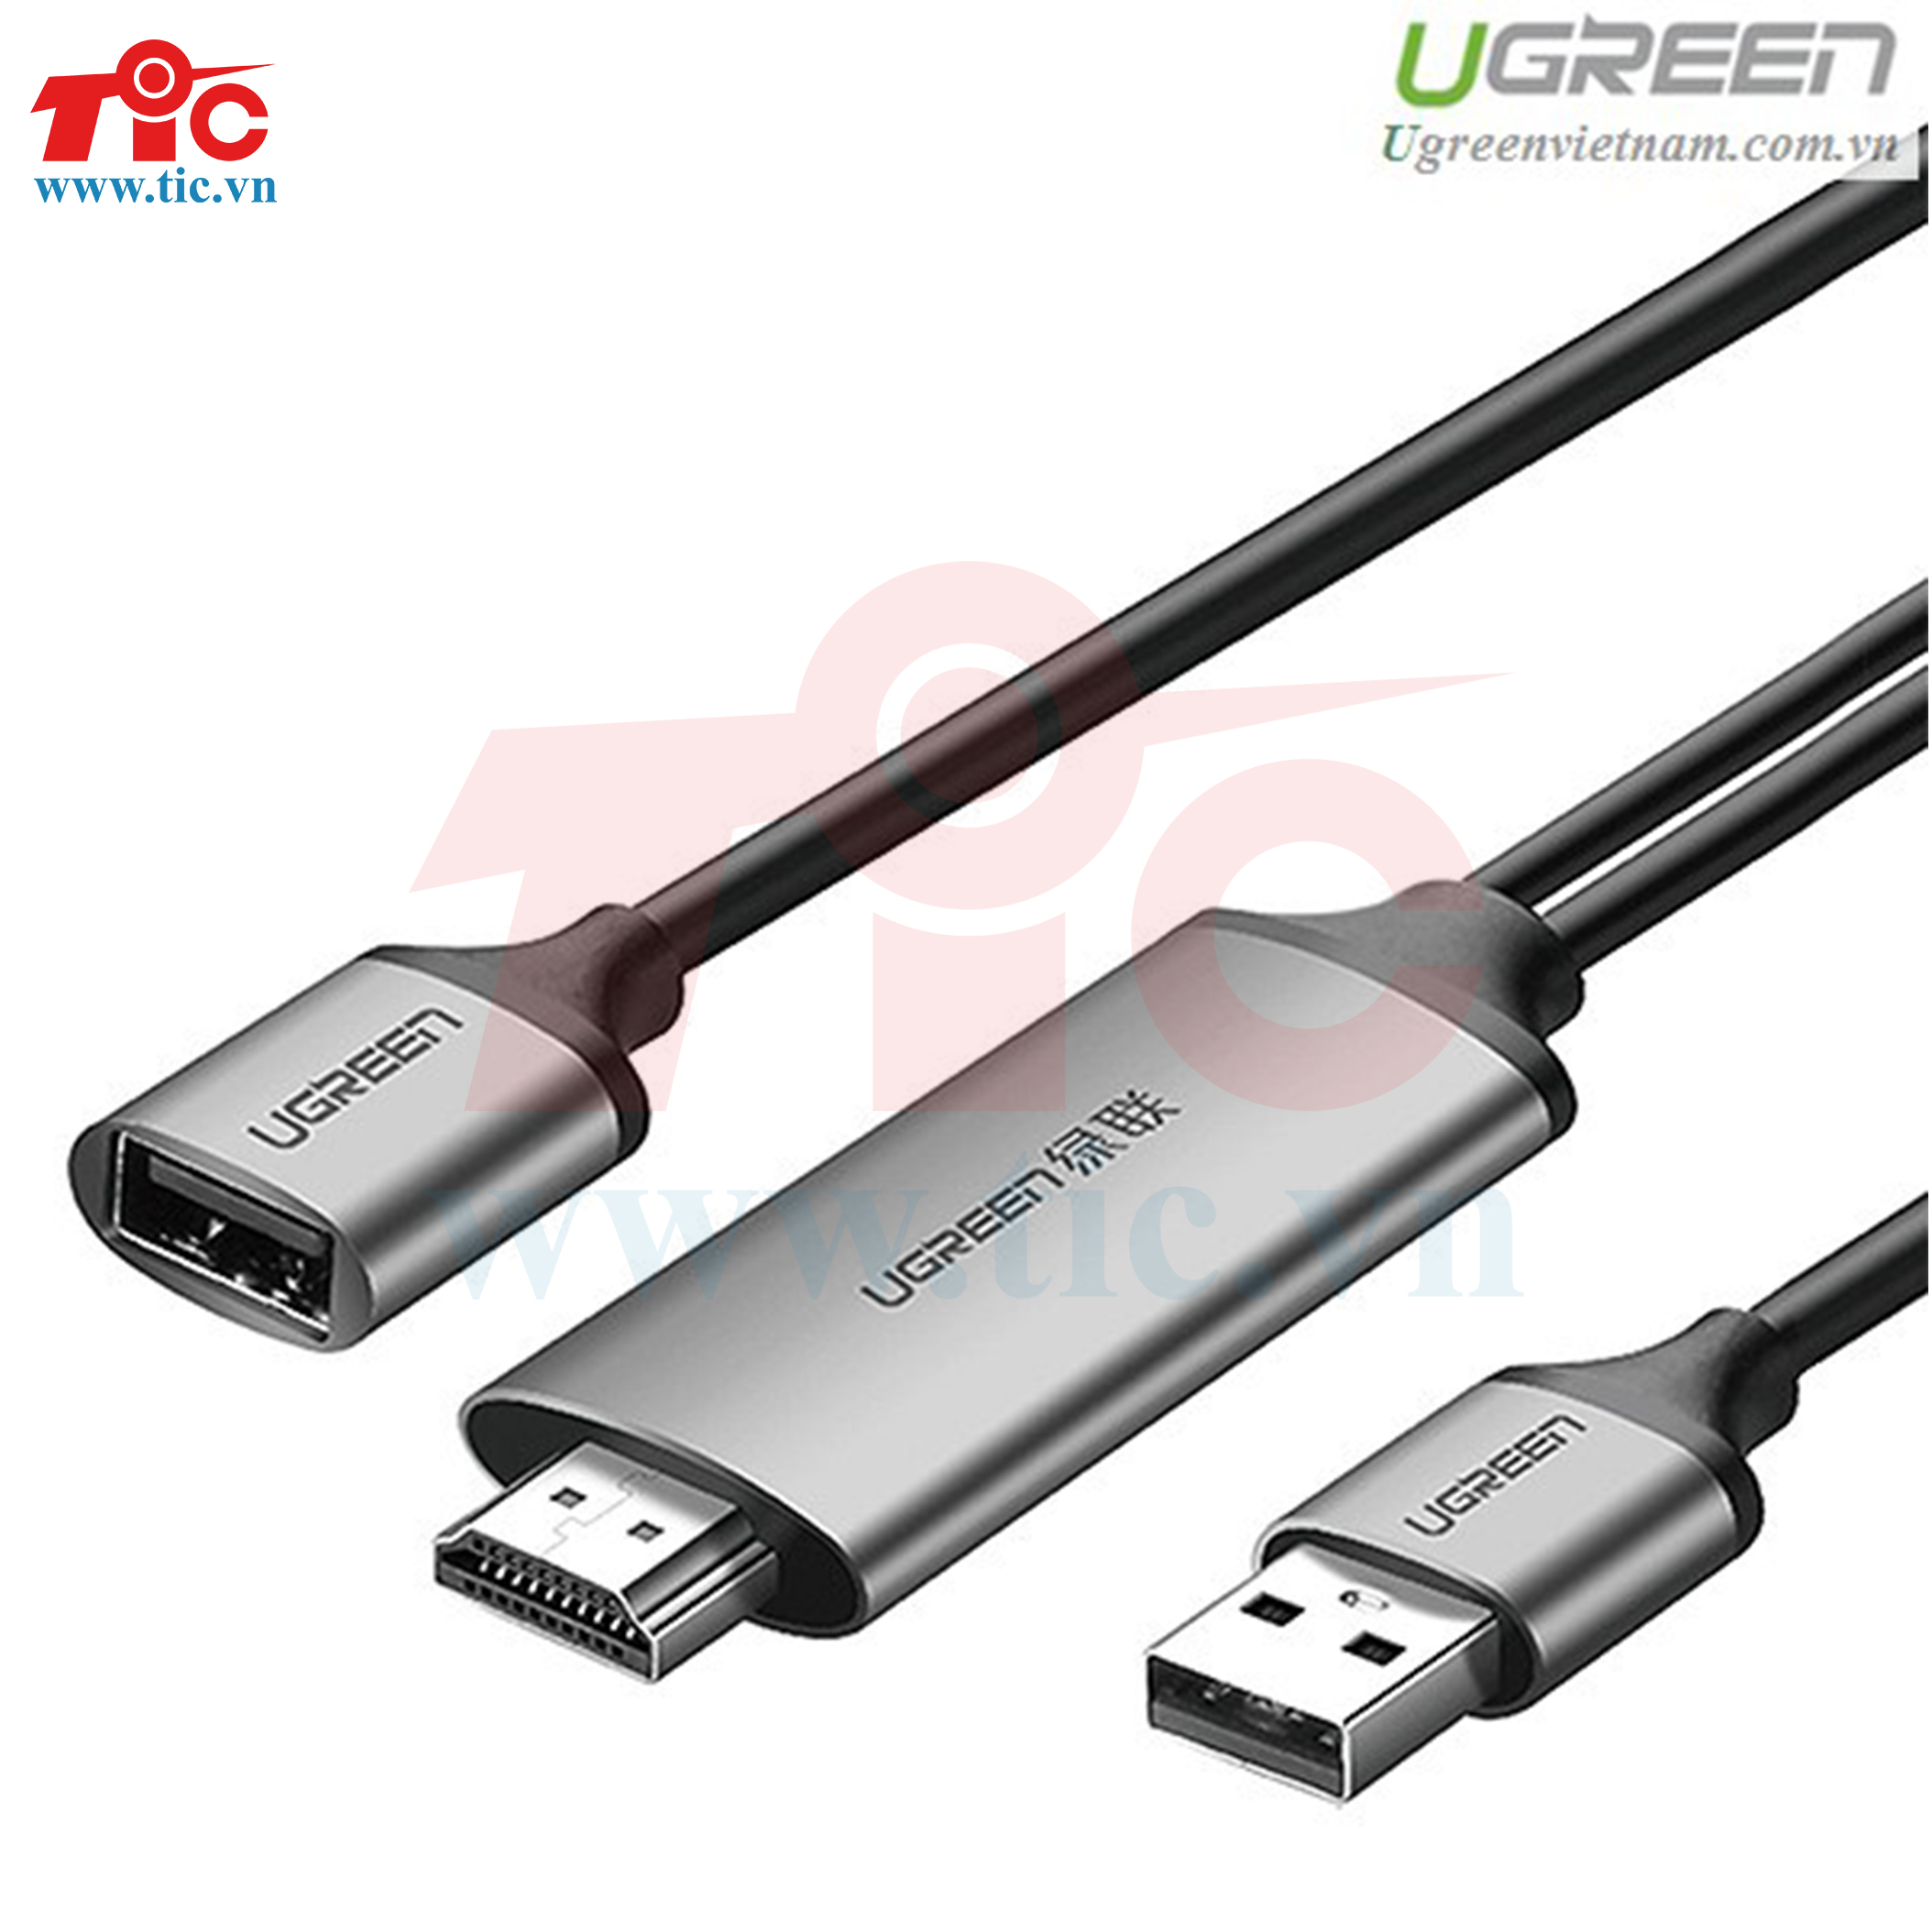 Cáp chuyển ổi USB to HDMI Digital AV Adapter ugreen 50291